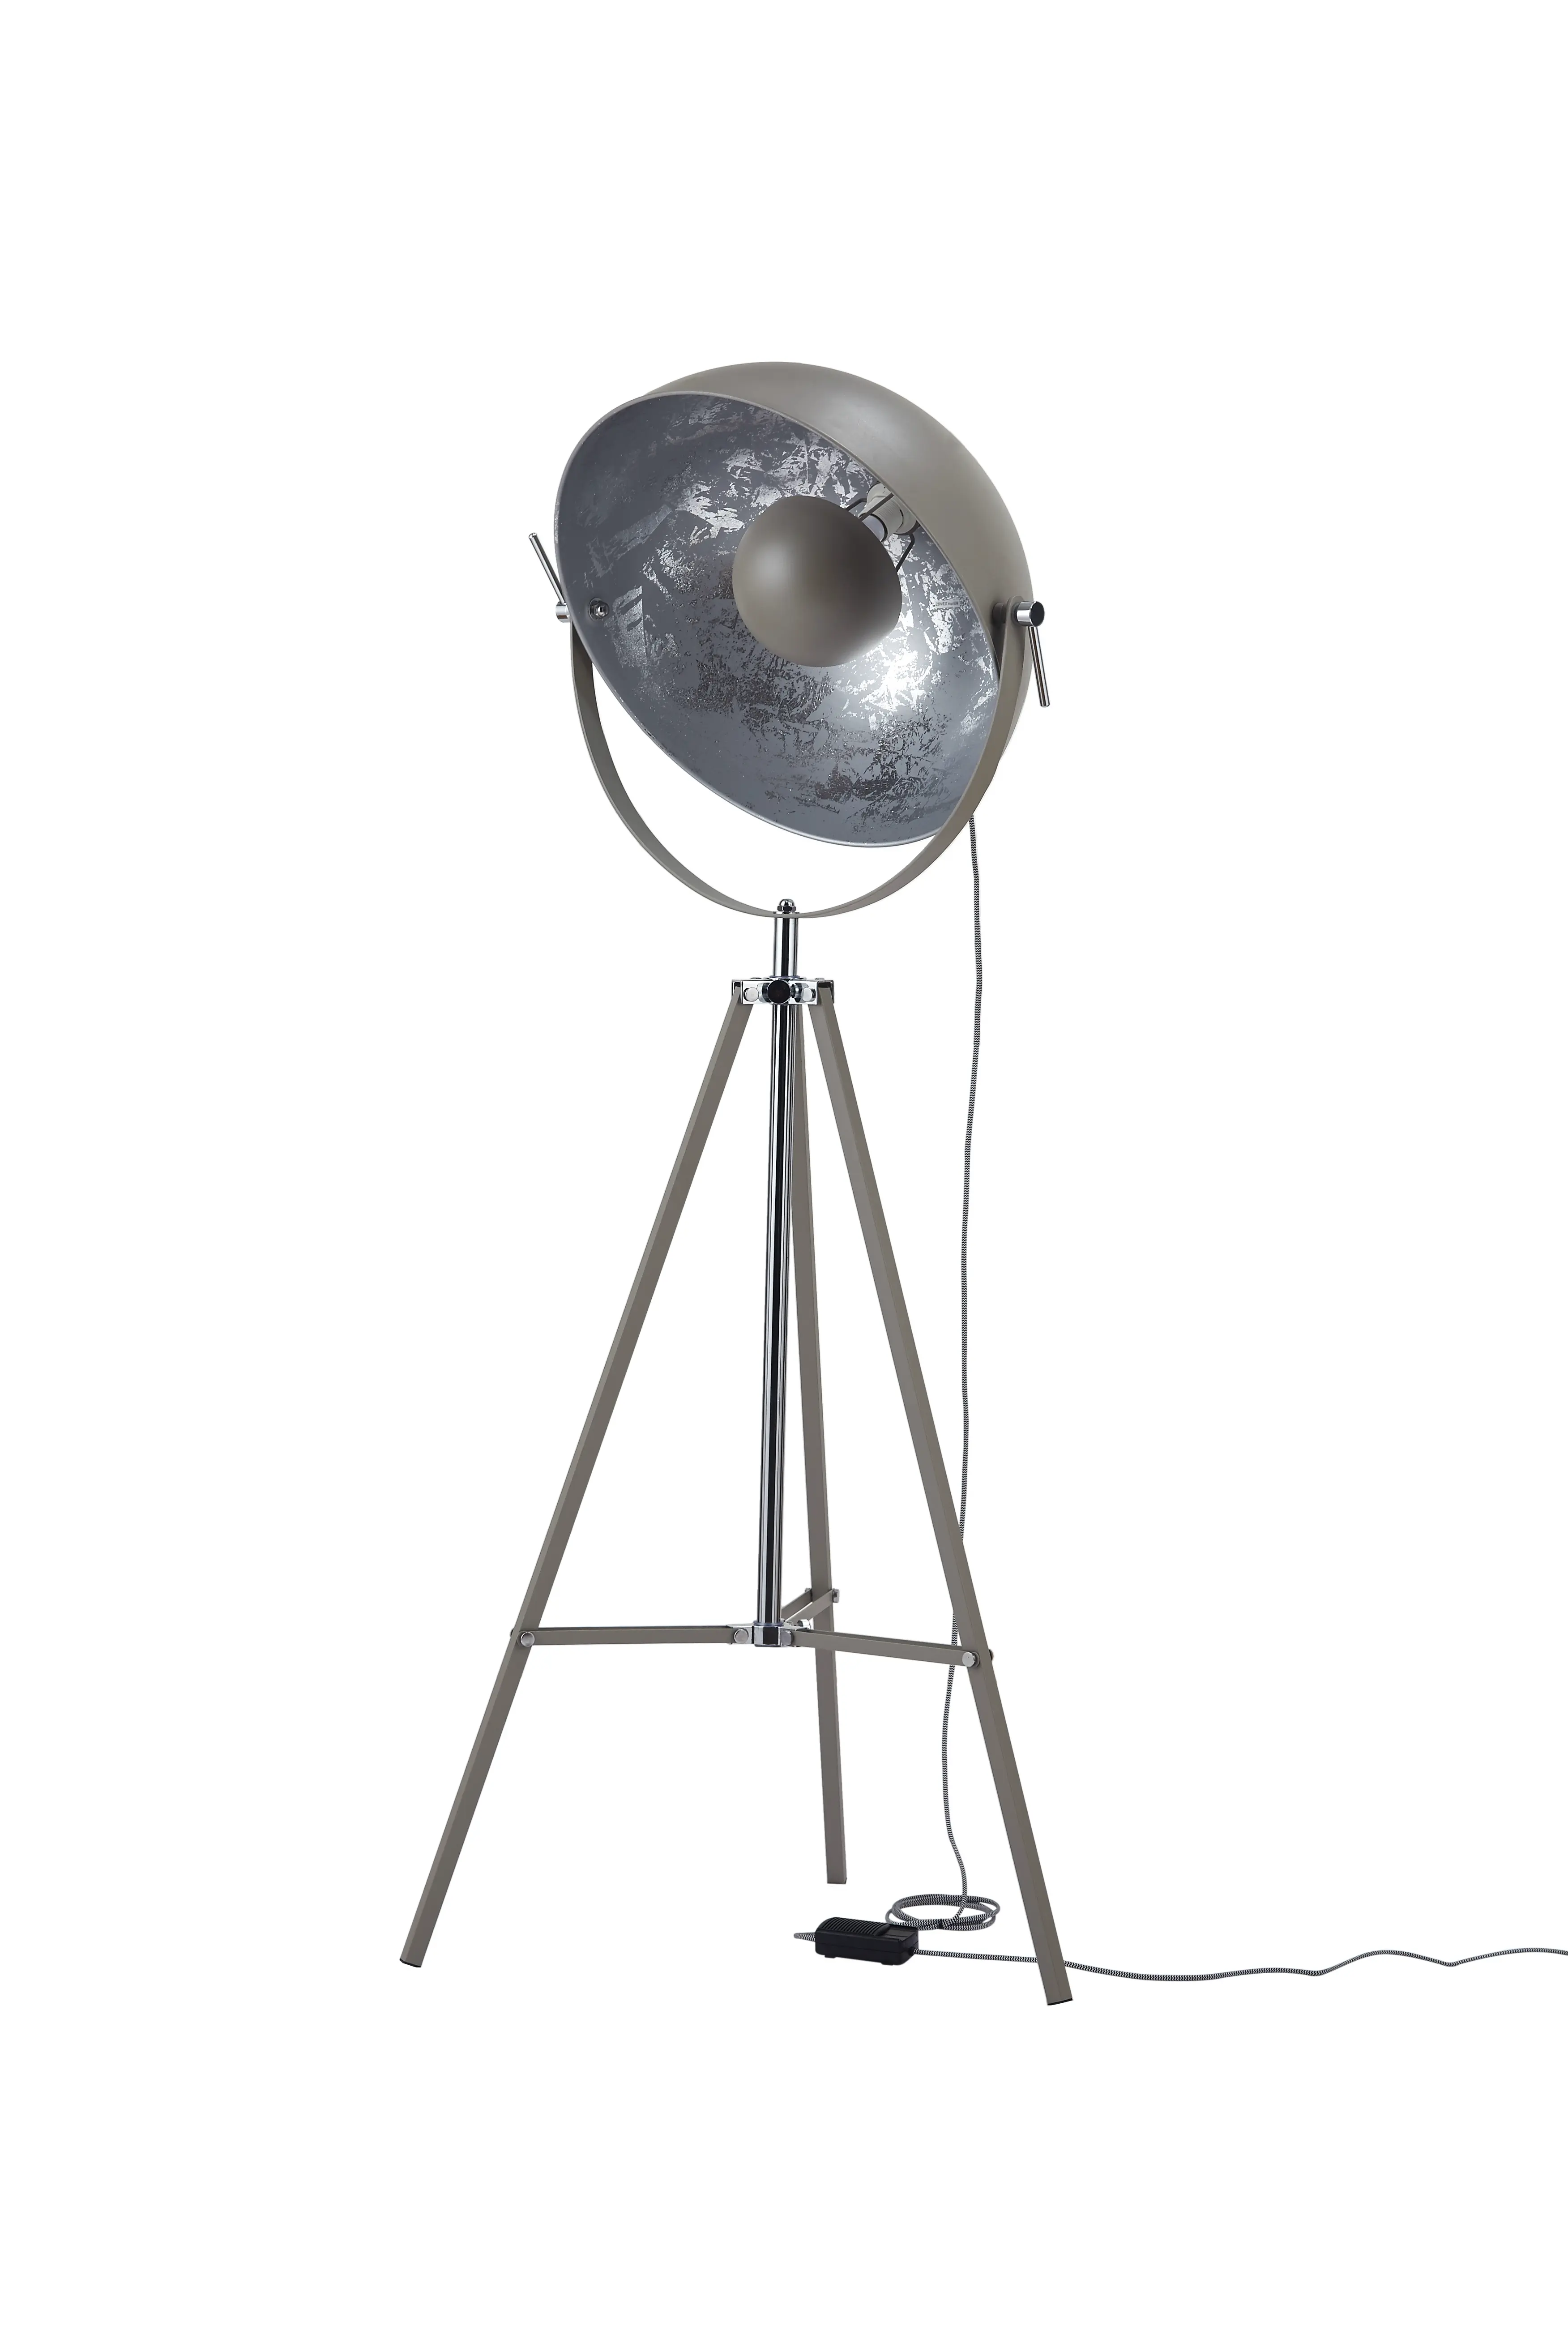 Stehlampe Retro indirektes Licht mit Dimmer, beton, silber